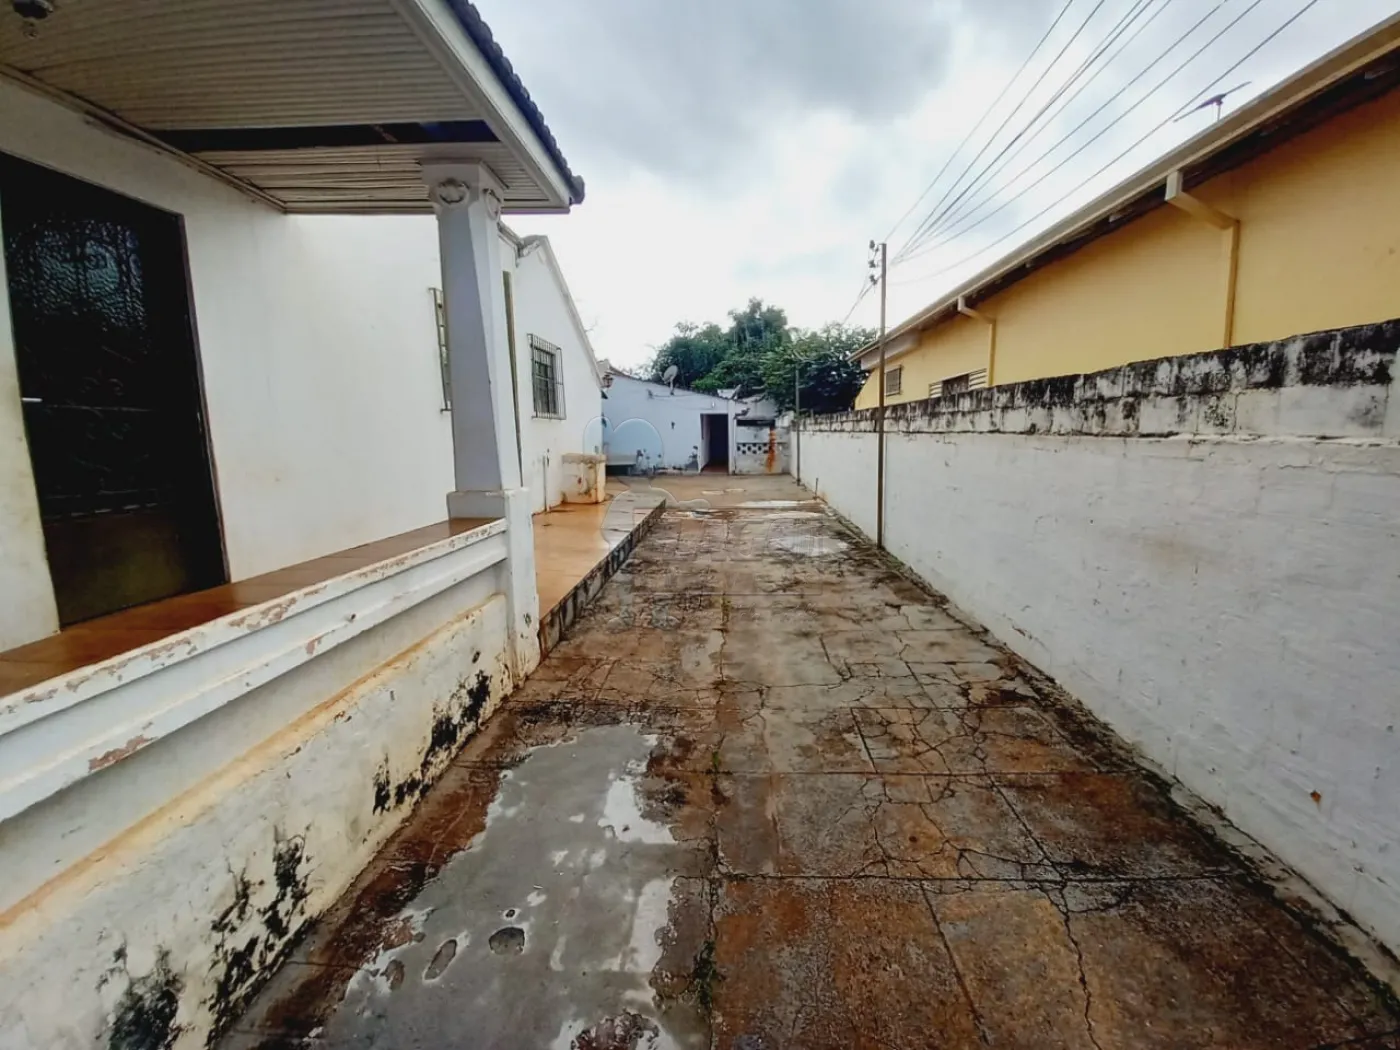 Comprar Casas / Padrão em Ribeirão Preto R$ 380.000,00 - Foto 16